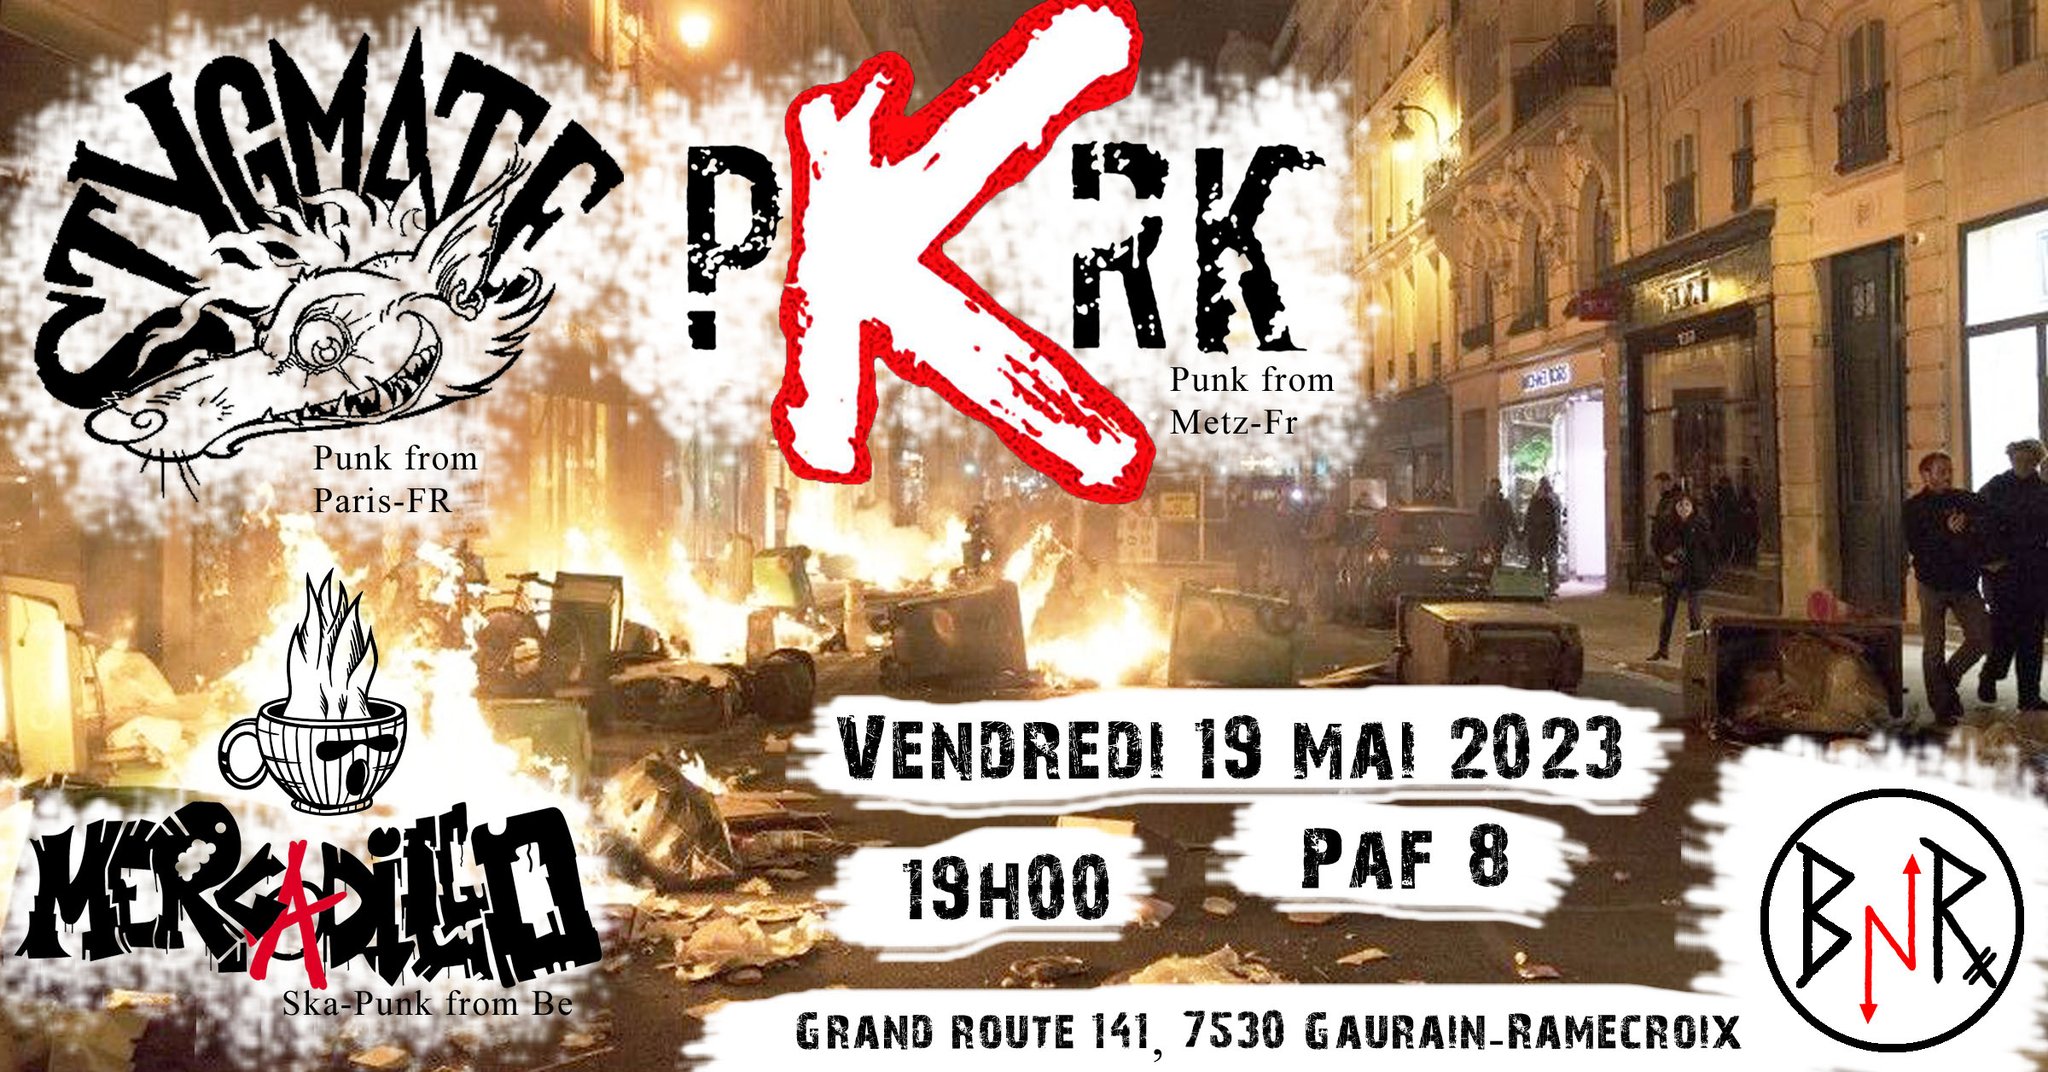 PKRK // Stygmate // Mercadillo (Punk / Ska) au BnR